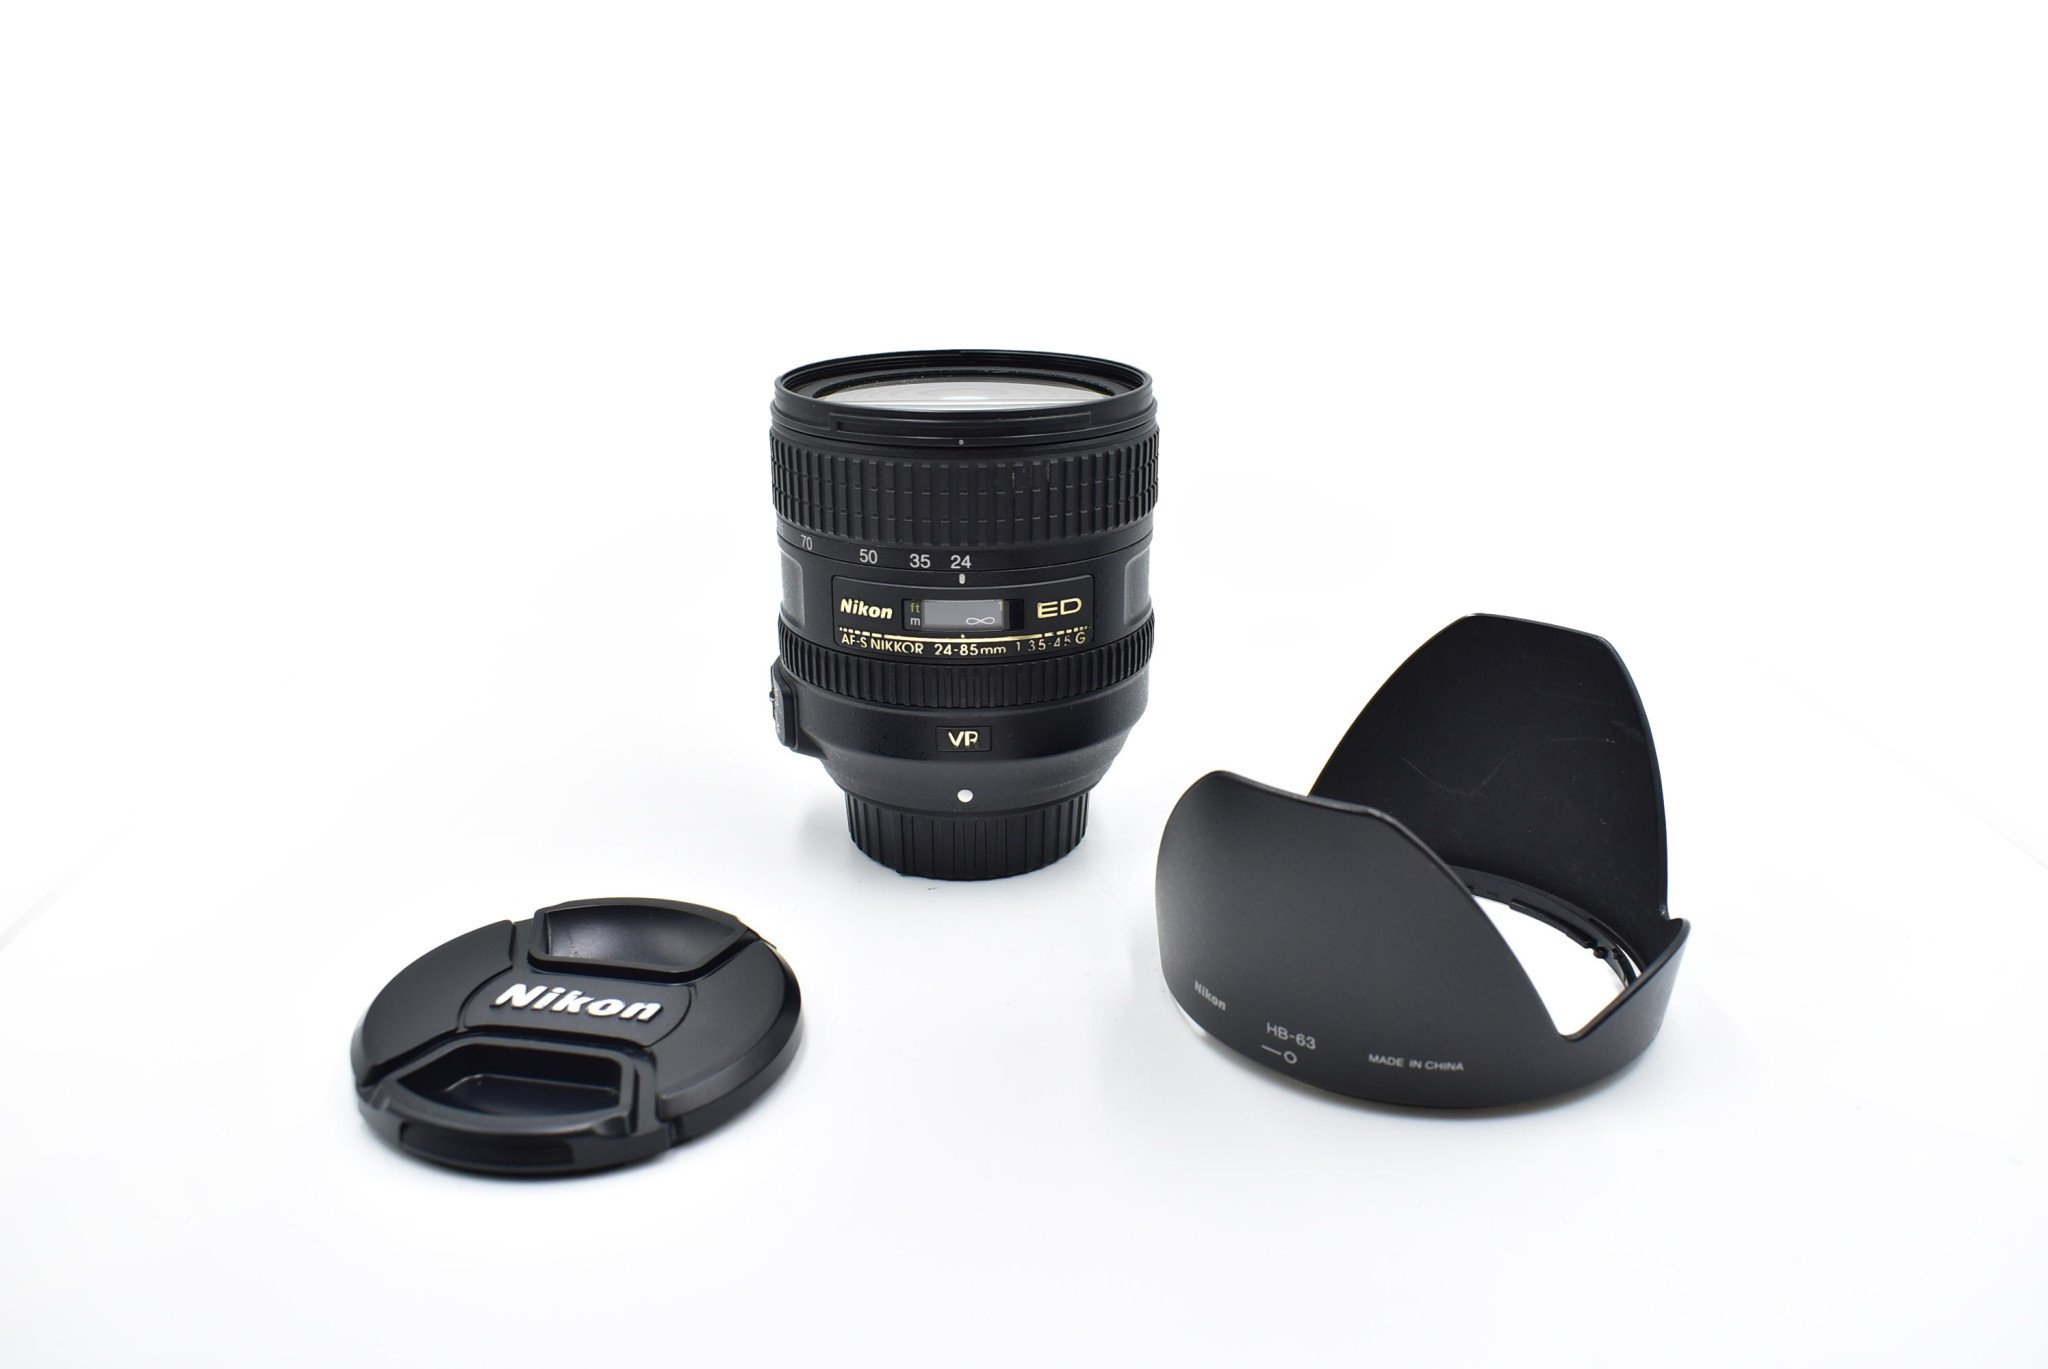 Nikon AF-S Zoom Nikkor 24-85mm F3.5-4.5Gズーム